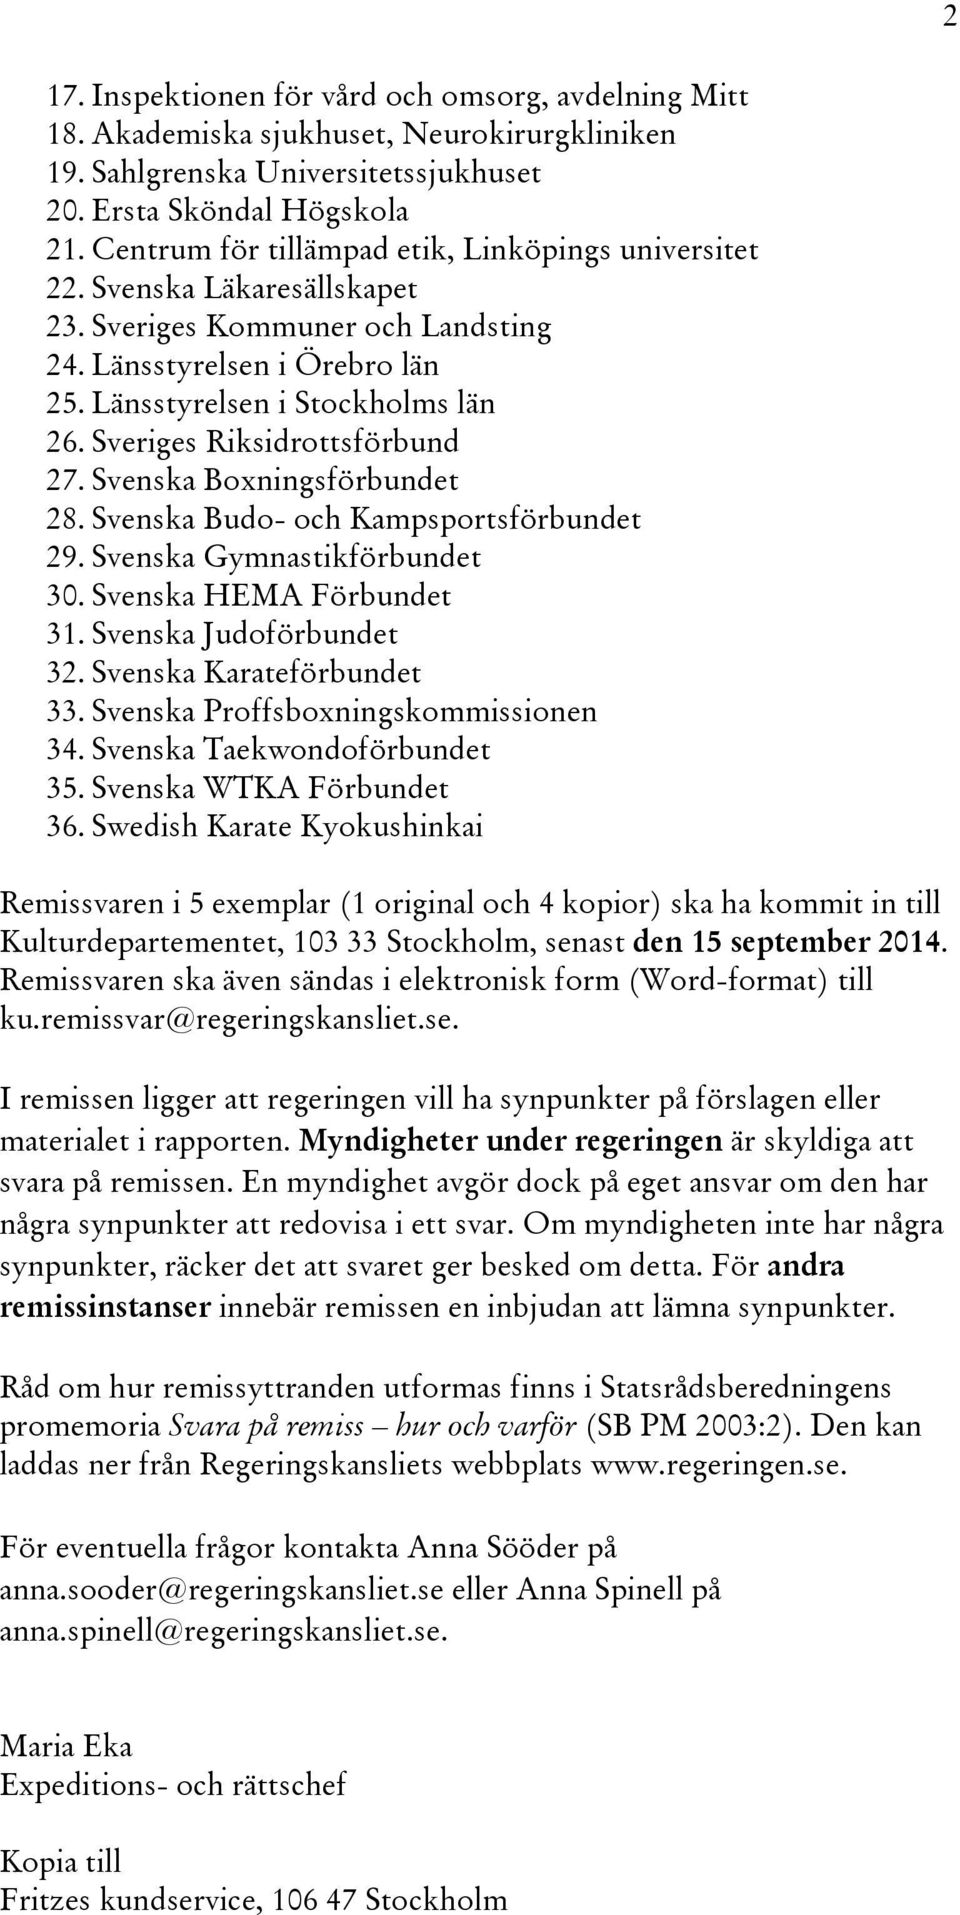 Sveriges Riksidrottsförbund 27. Svenska Boxningsförbundet 28. Svenska Budo- och Kampsportsförbundet 29. Svenska Gymnastikförbundet 30. Svenska HEMA Förbundet 31. Svenska Judoförbundet 32.